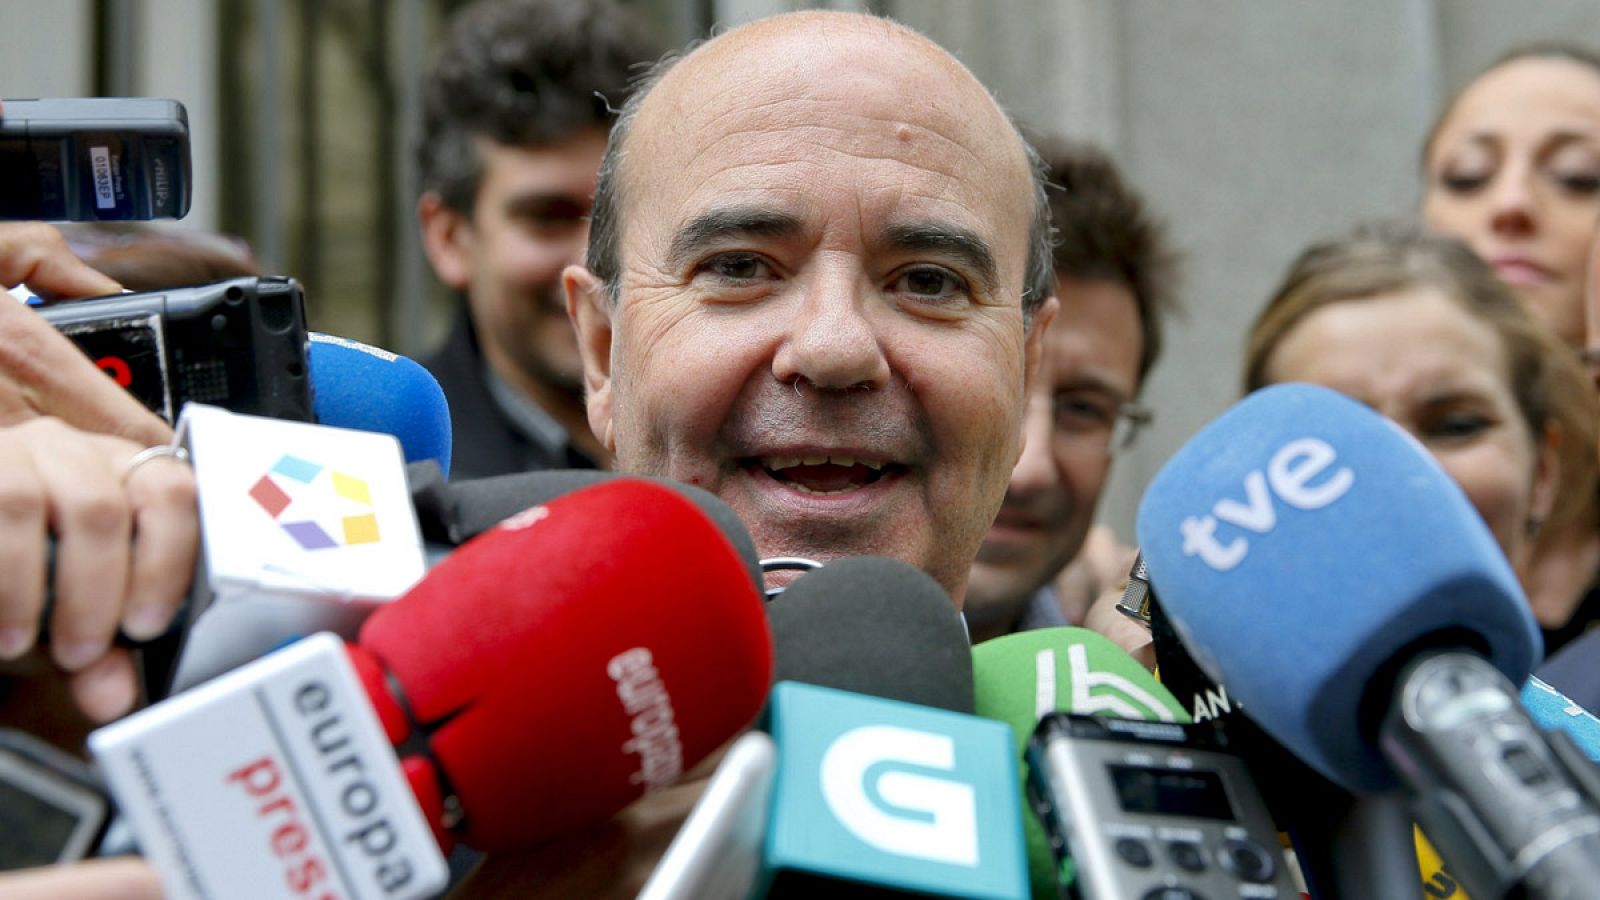 El exconsejero de presidencia de la Junta de Andalucía Gaspar Zarrías, saliendo de declarar en el Tribunal Supremo el 16 de abril de 2015.